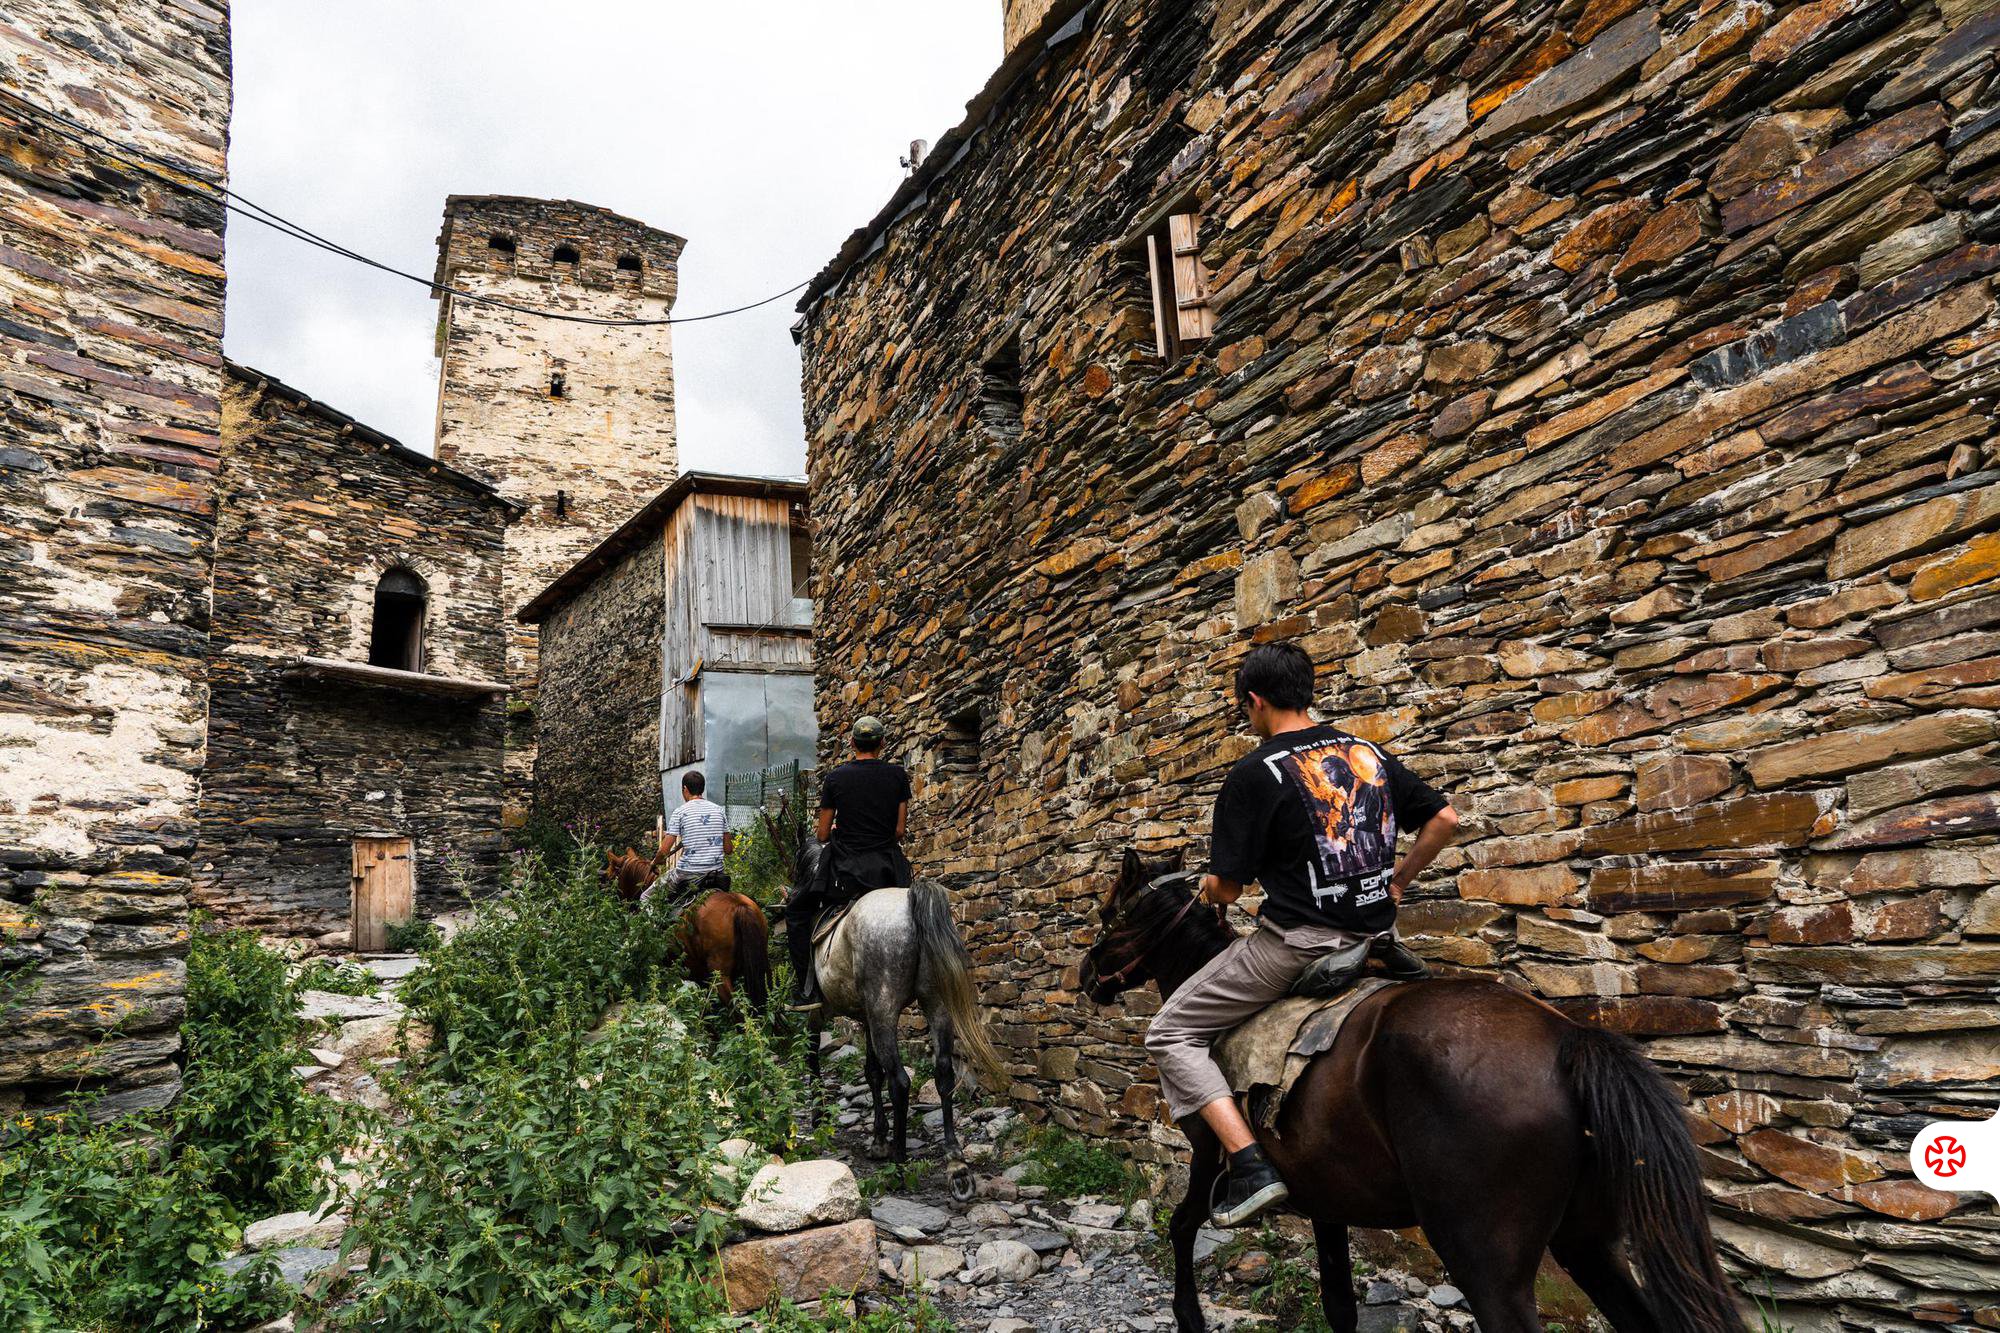 Ushguli People Riding Horses